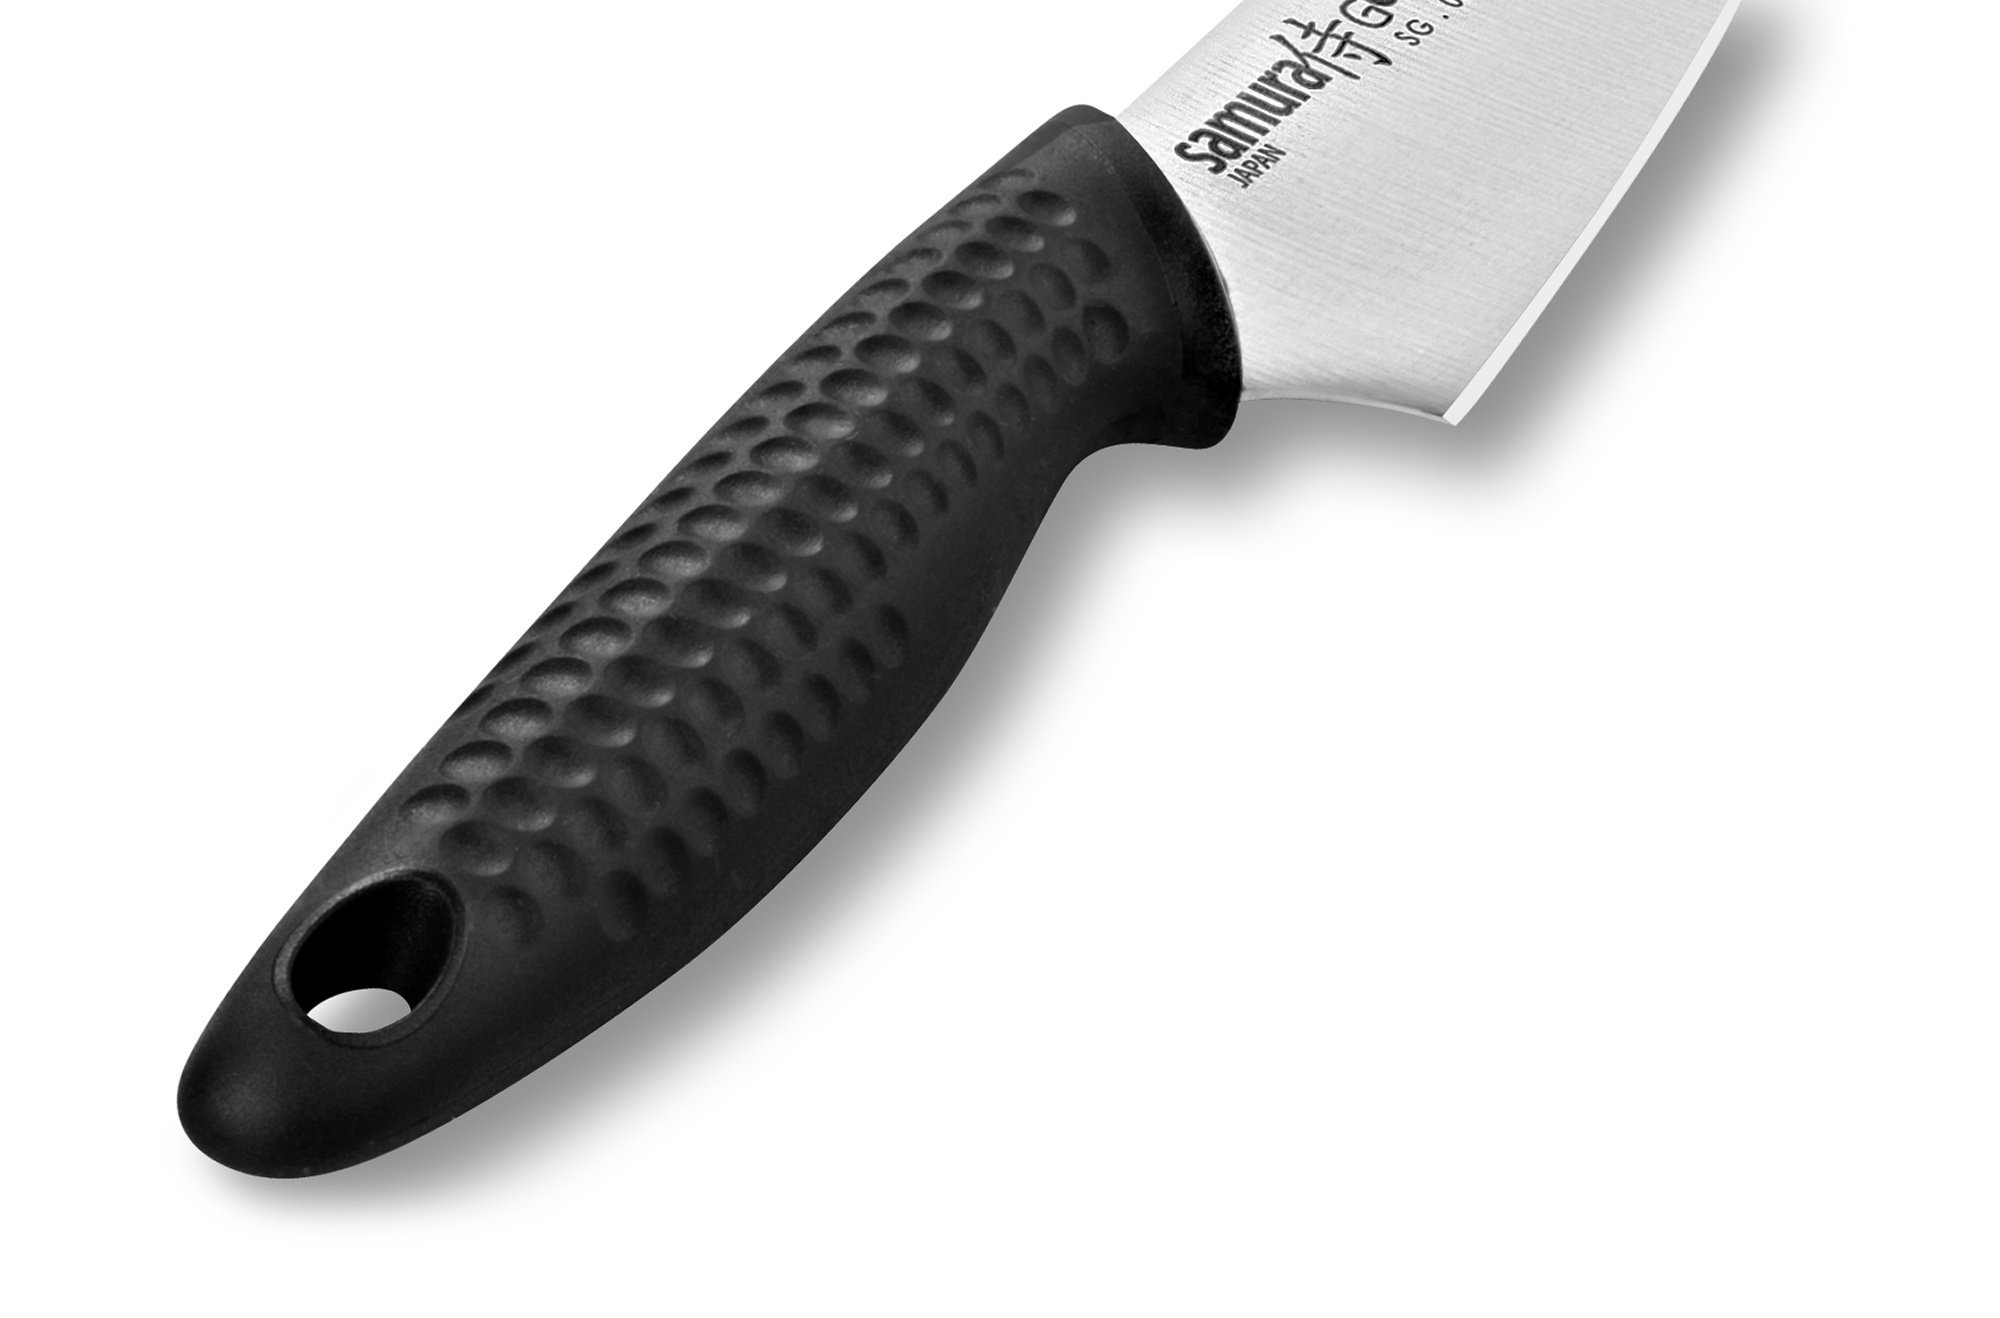 Нож кухонный овощной Samura GOLF - SG-0010, сталь AUS-8, рукоять полипропилен, 98 мм от Ножиков